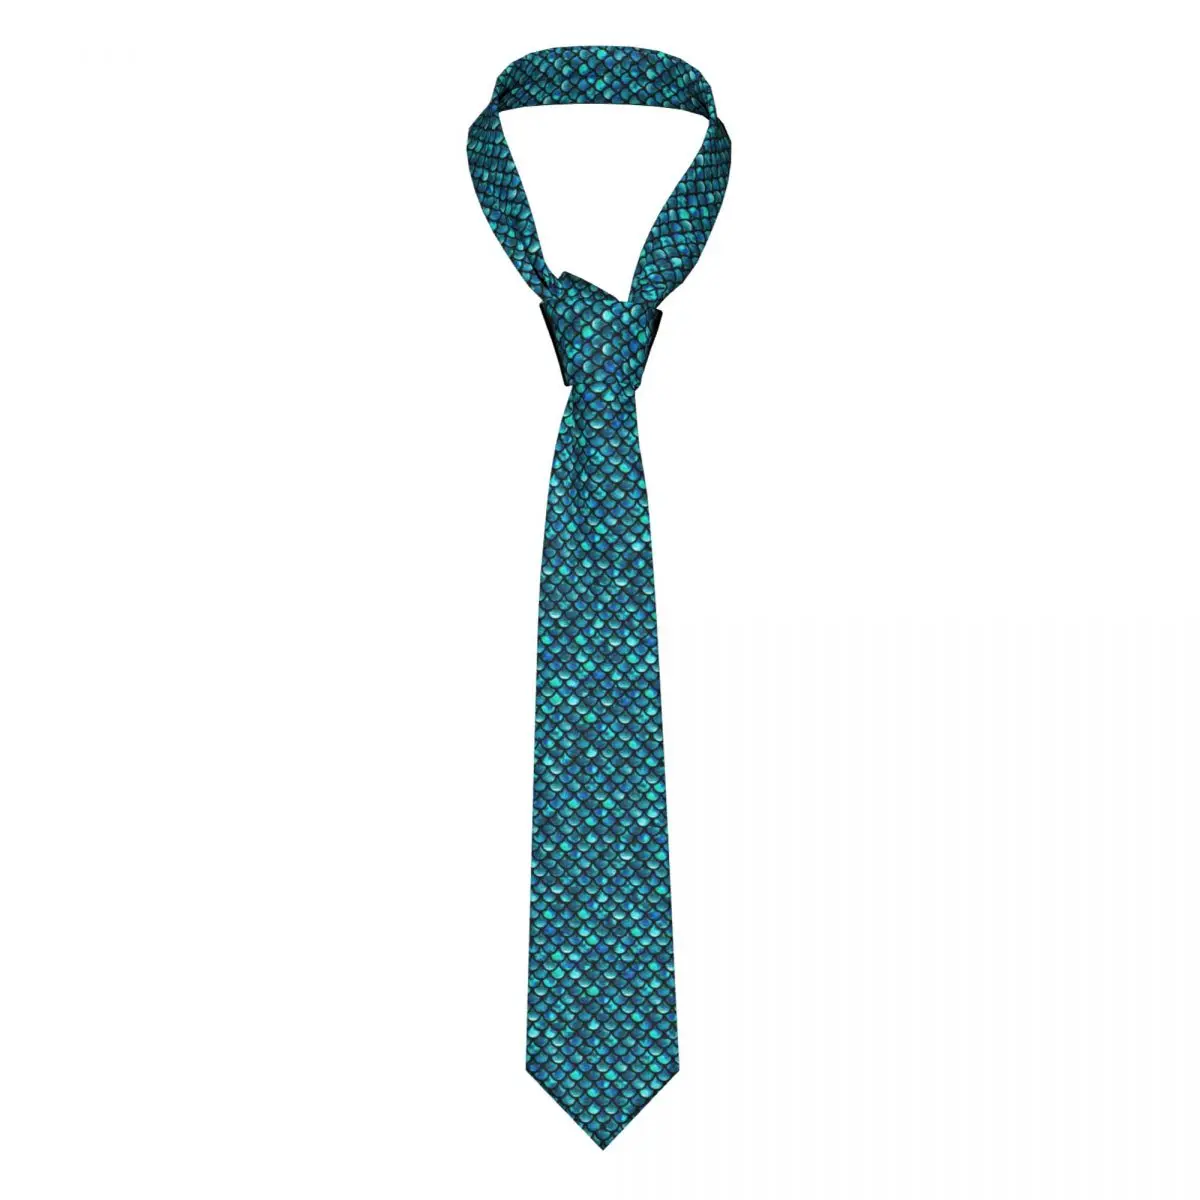 

Русалка весы Галстук бирюзовый синий животный принт аксессуары мужской шейный галстук винтажная блузка 8 см деловой ГАЛСТУК